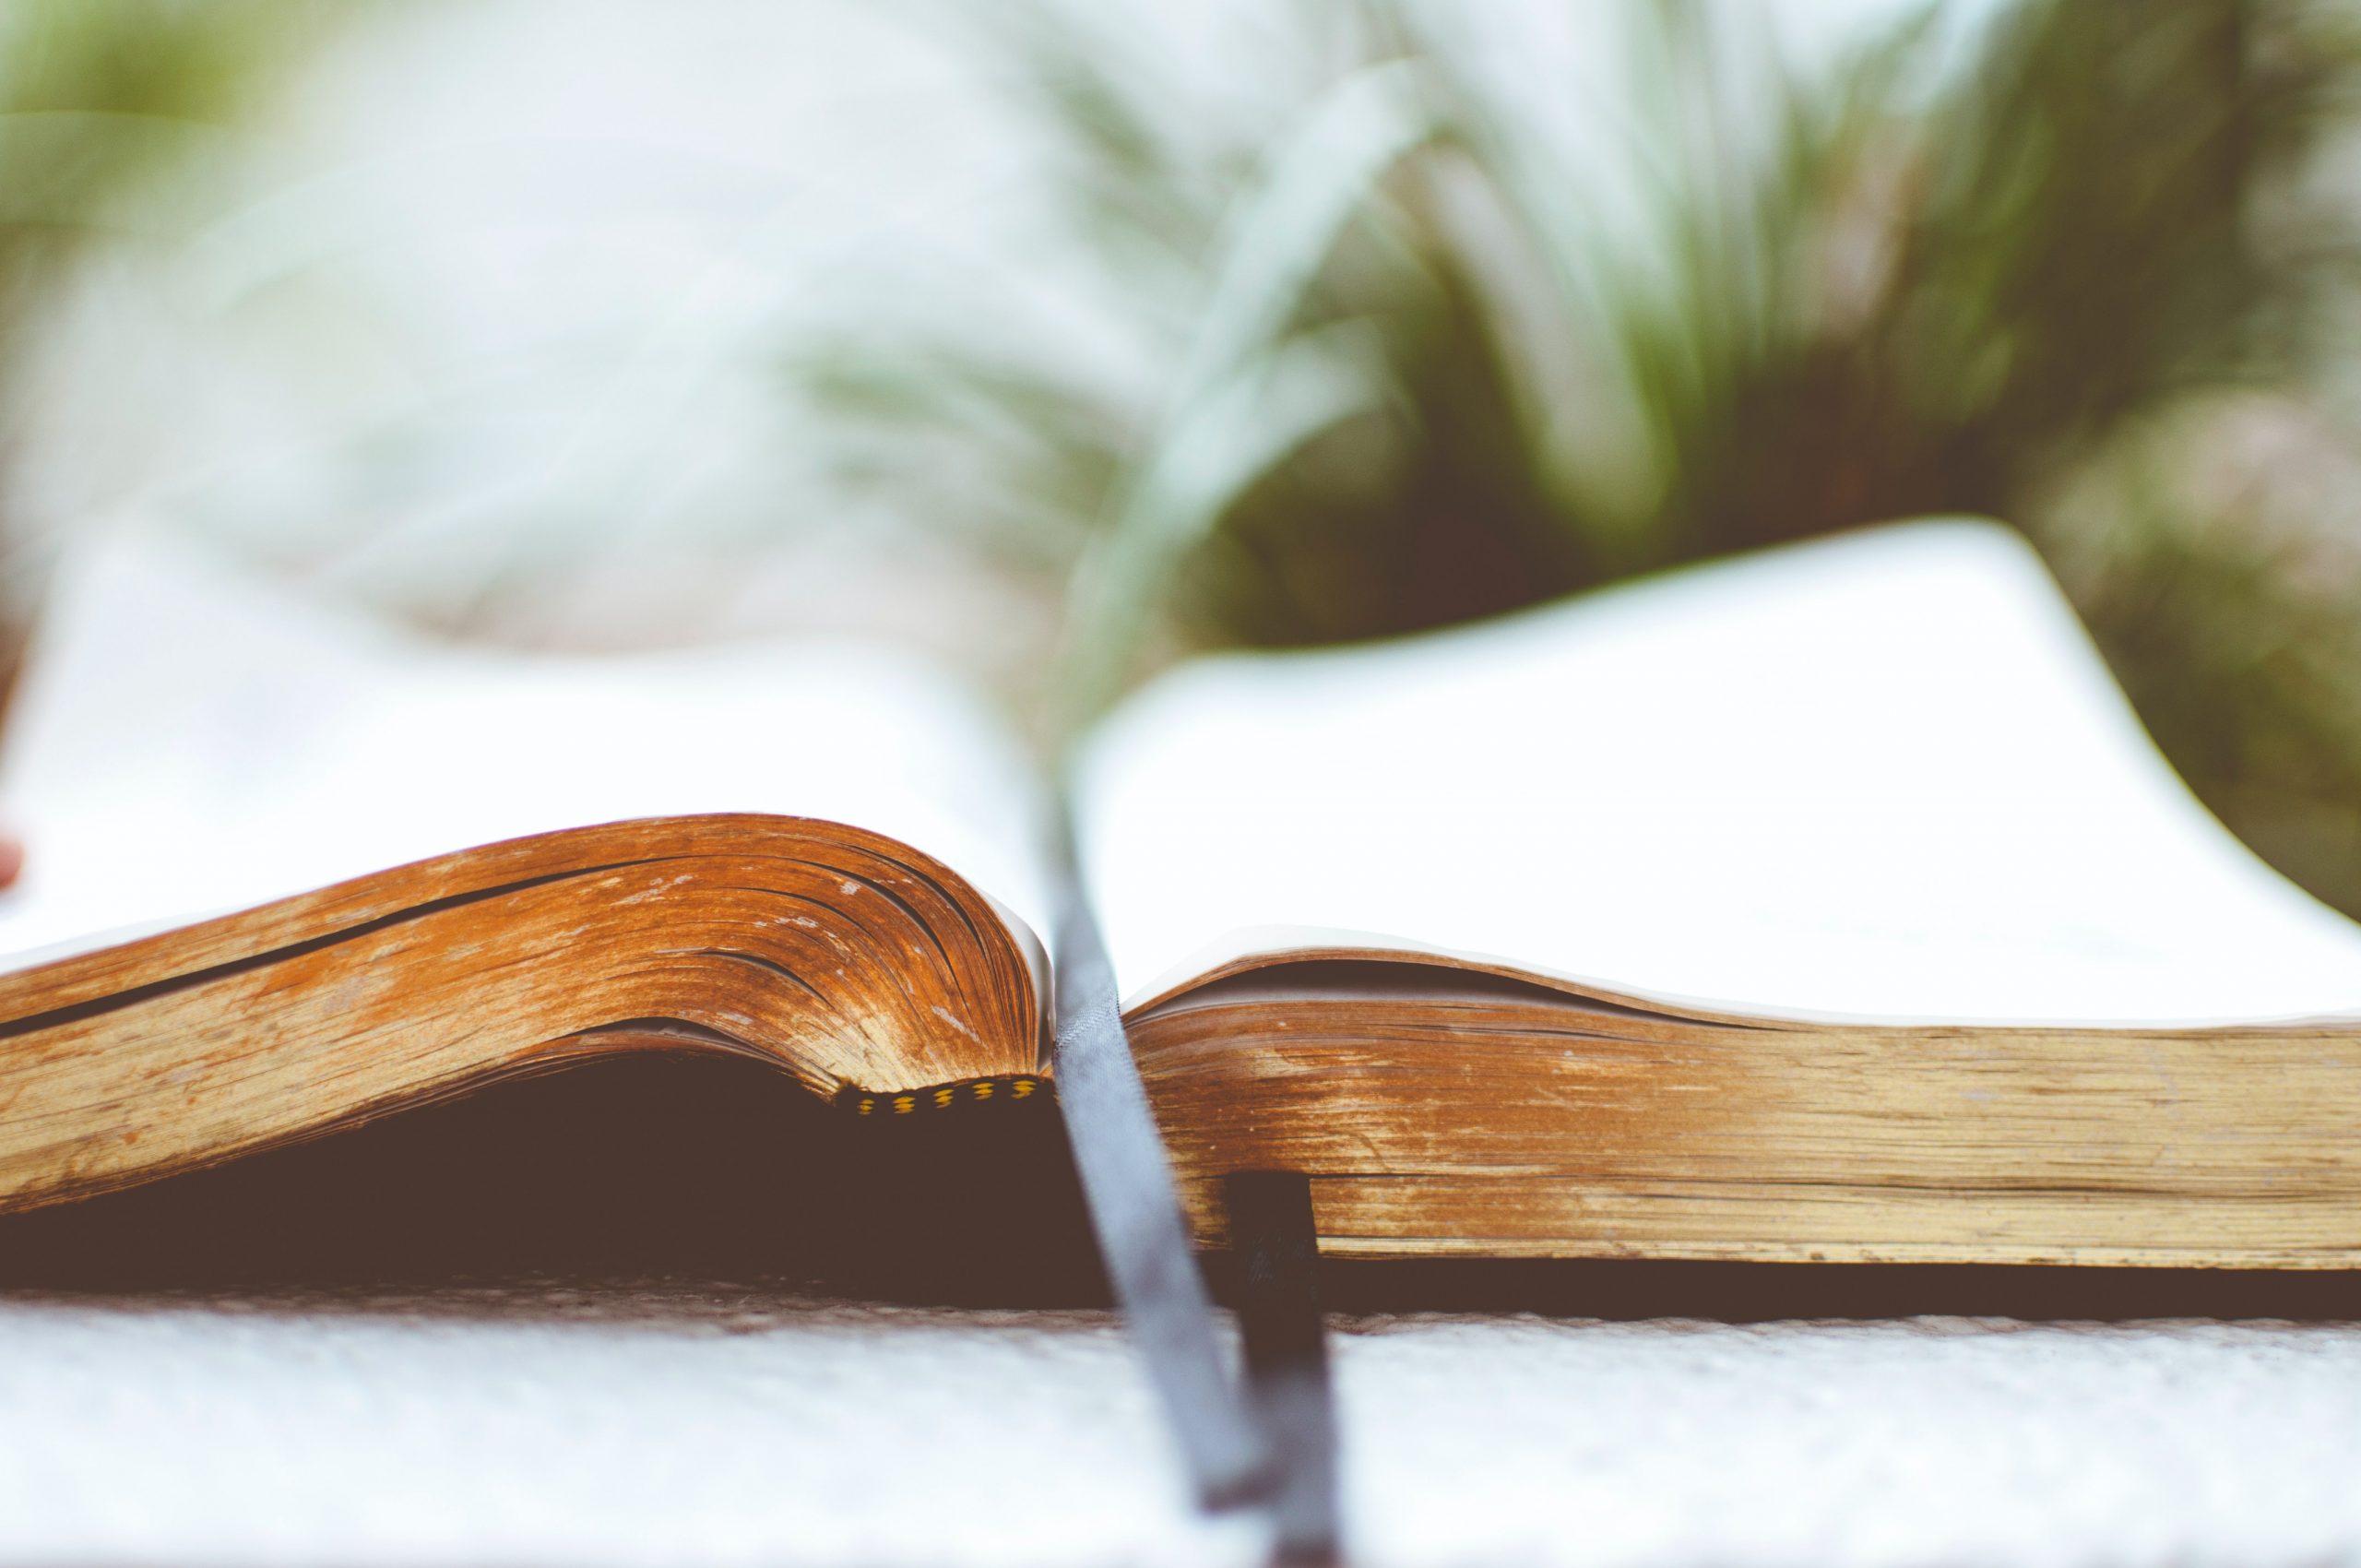 Sì, leggere le Scritture cambia davvero le persone